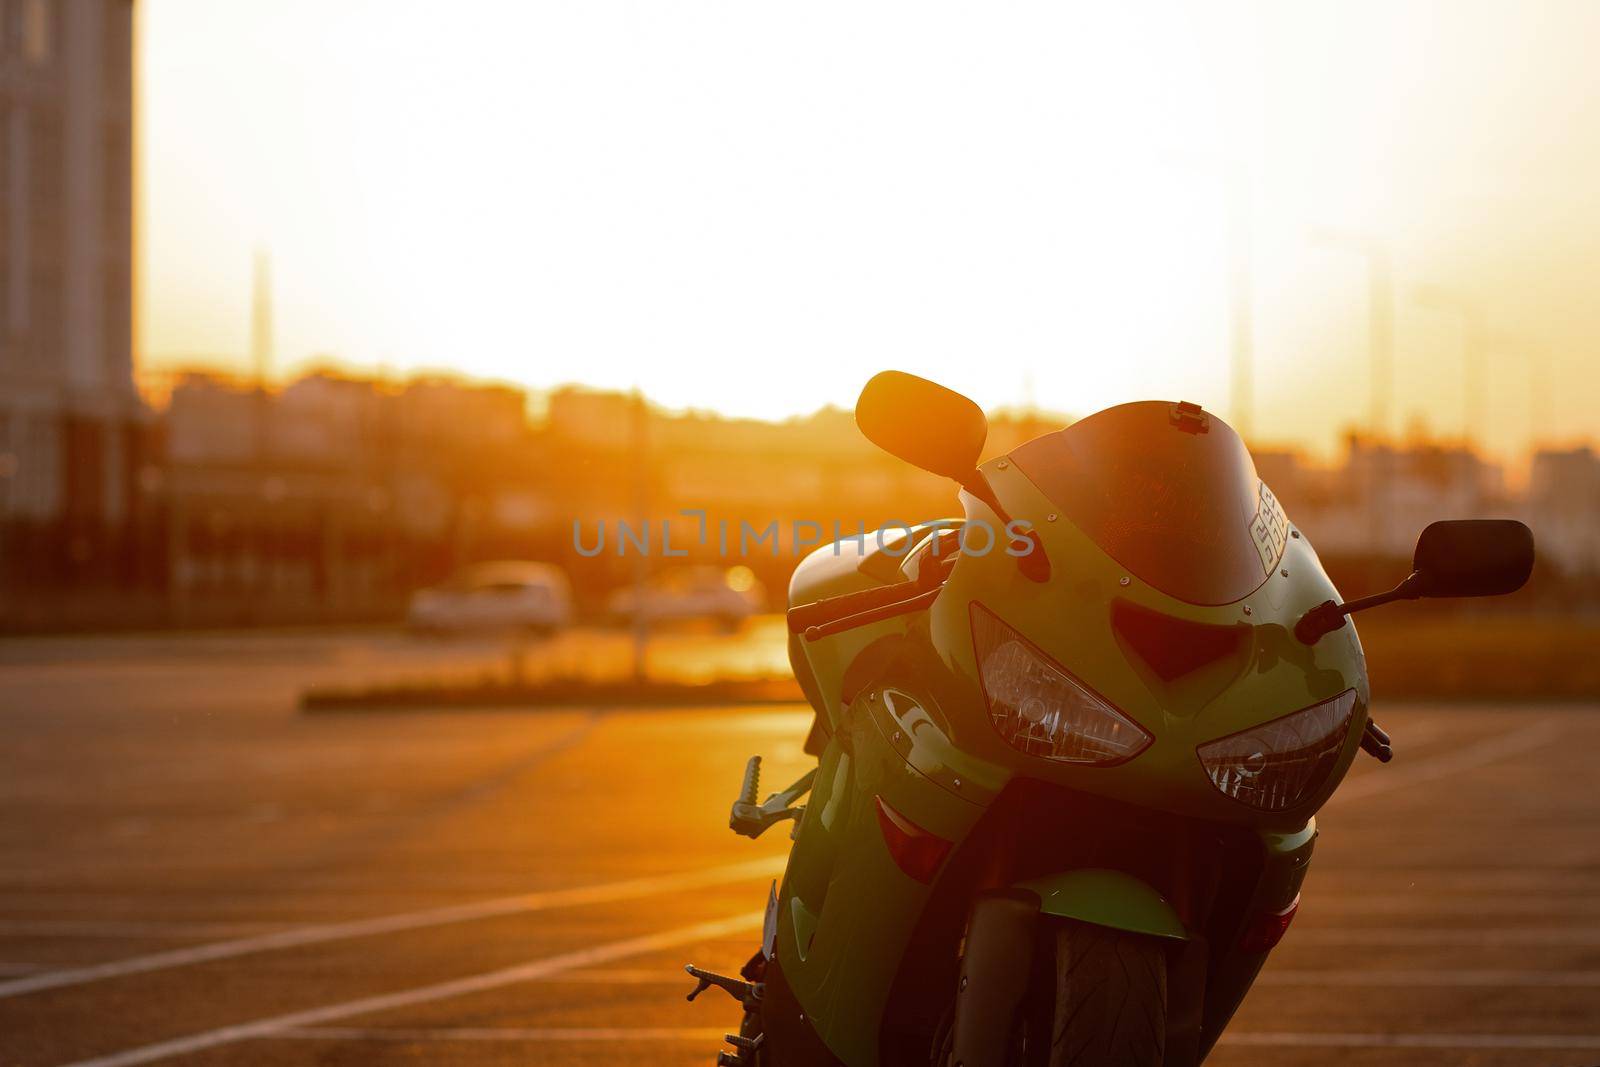 Cool man on motorcycle against sundown sky by 3KStudio